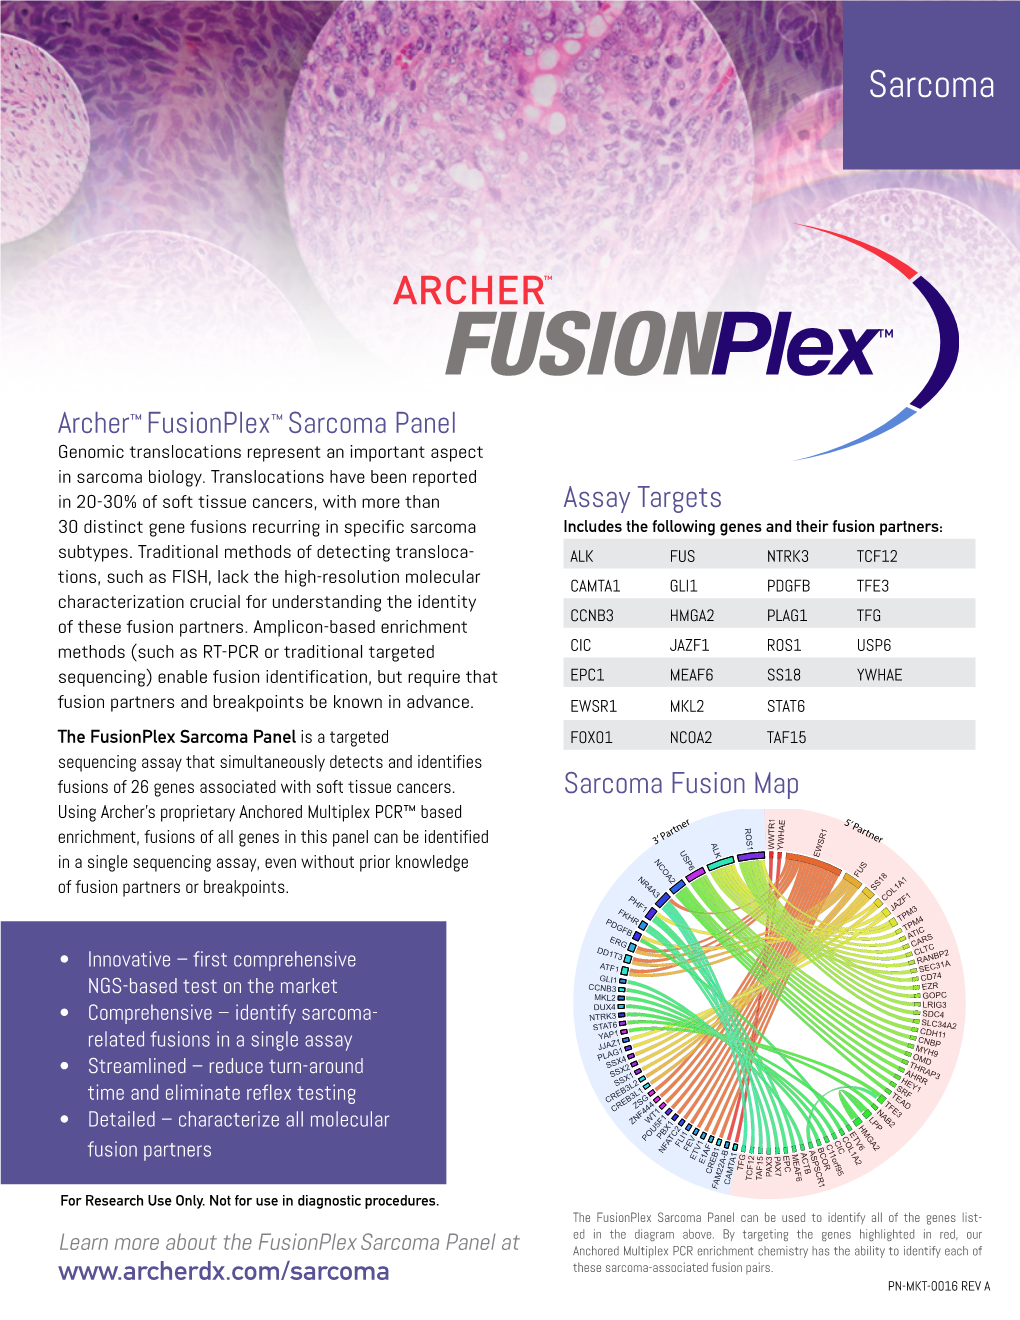 Archer™ Fusionplex™ Sarcoma Panel Genomic Translocations Represent an Important Aspect in Sarcoma Biology